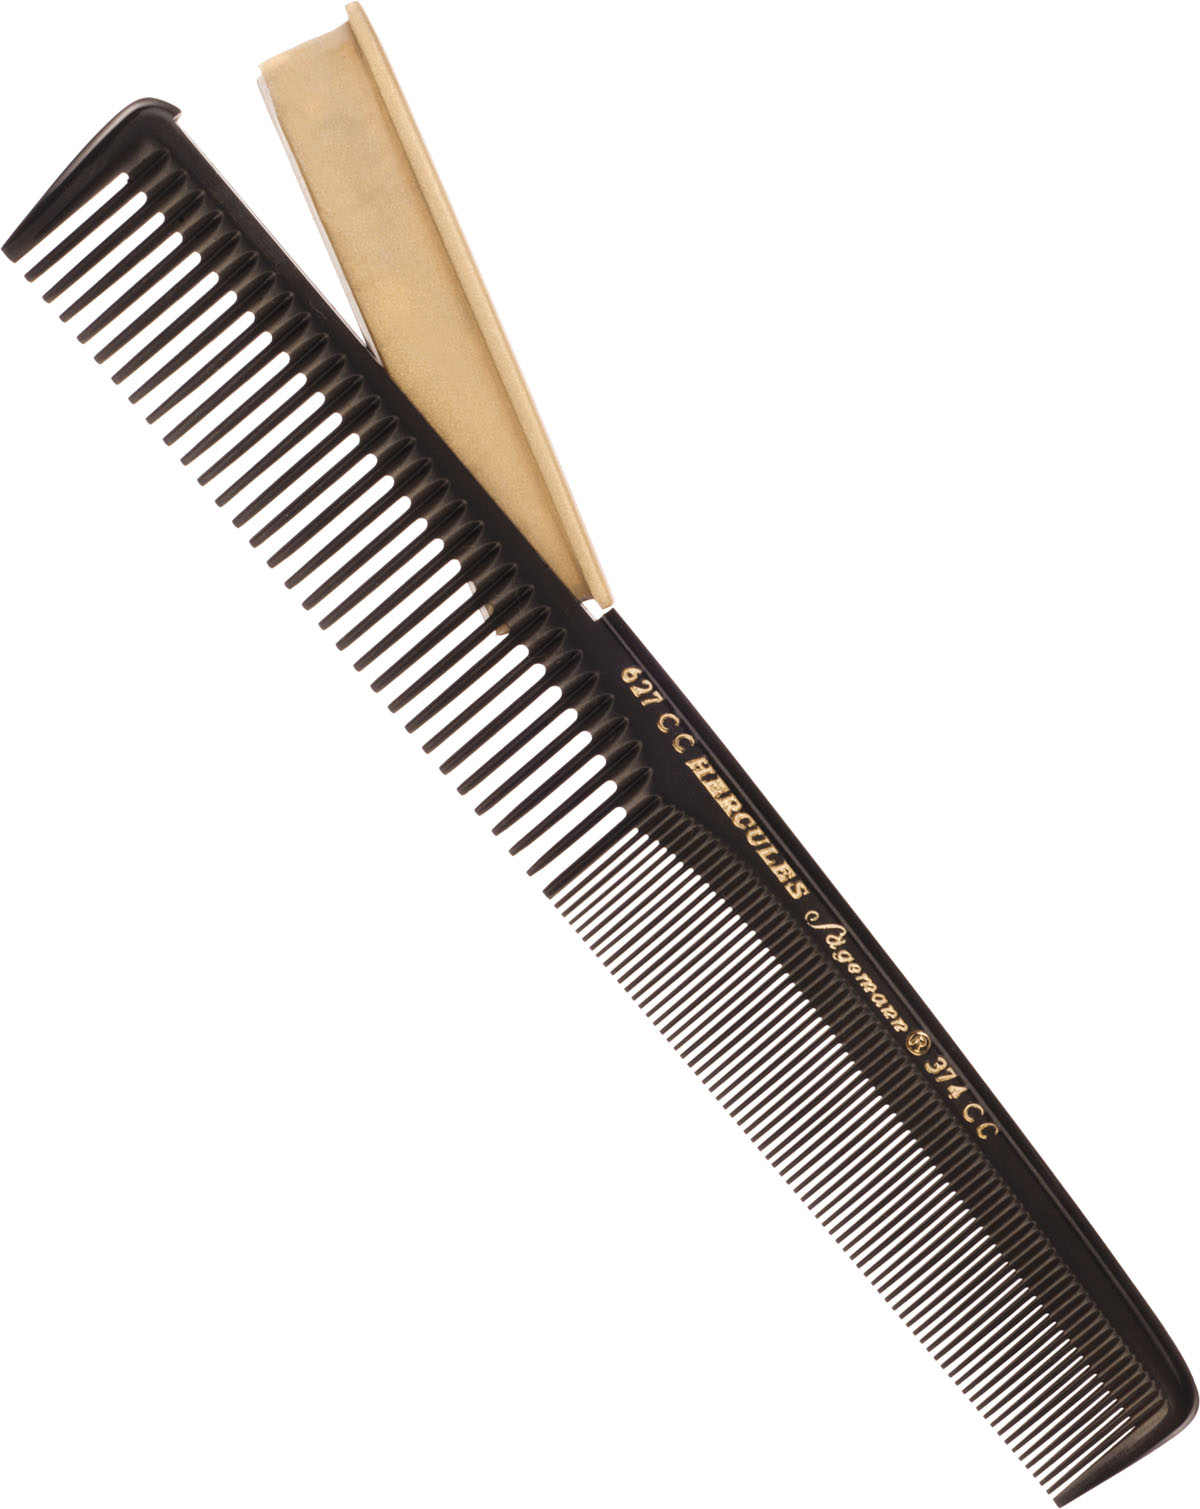  Hercules Sägemann Hair Cutting Comb with Blade 7", No. 627 CC 